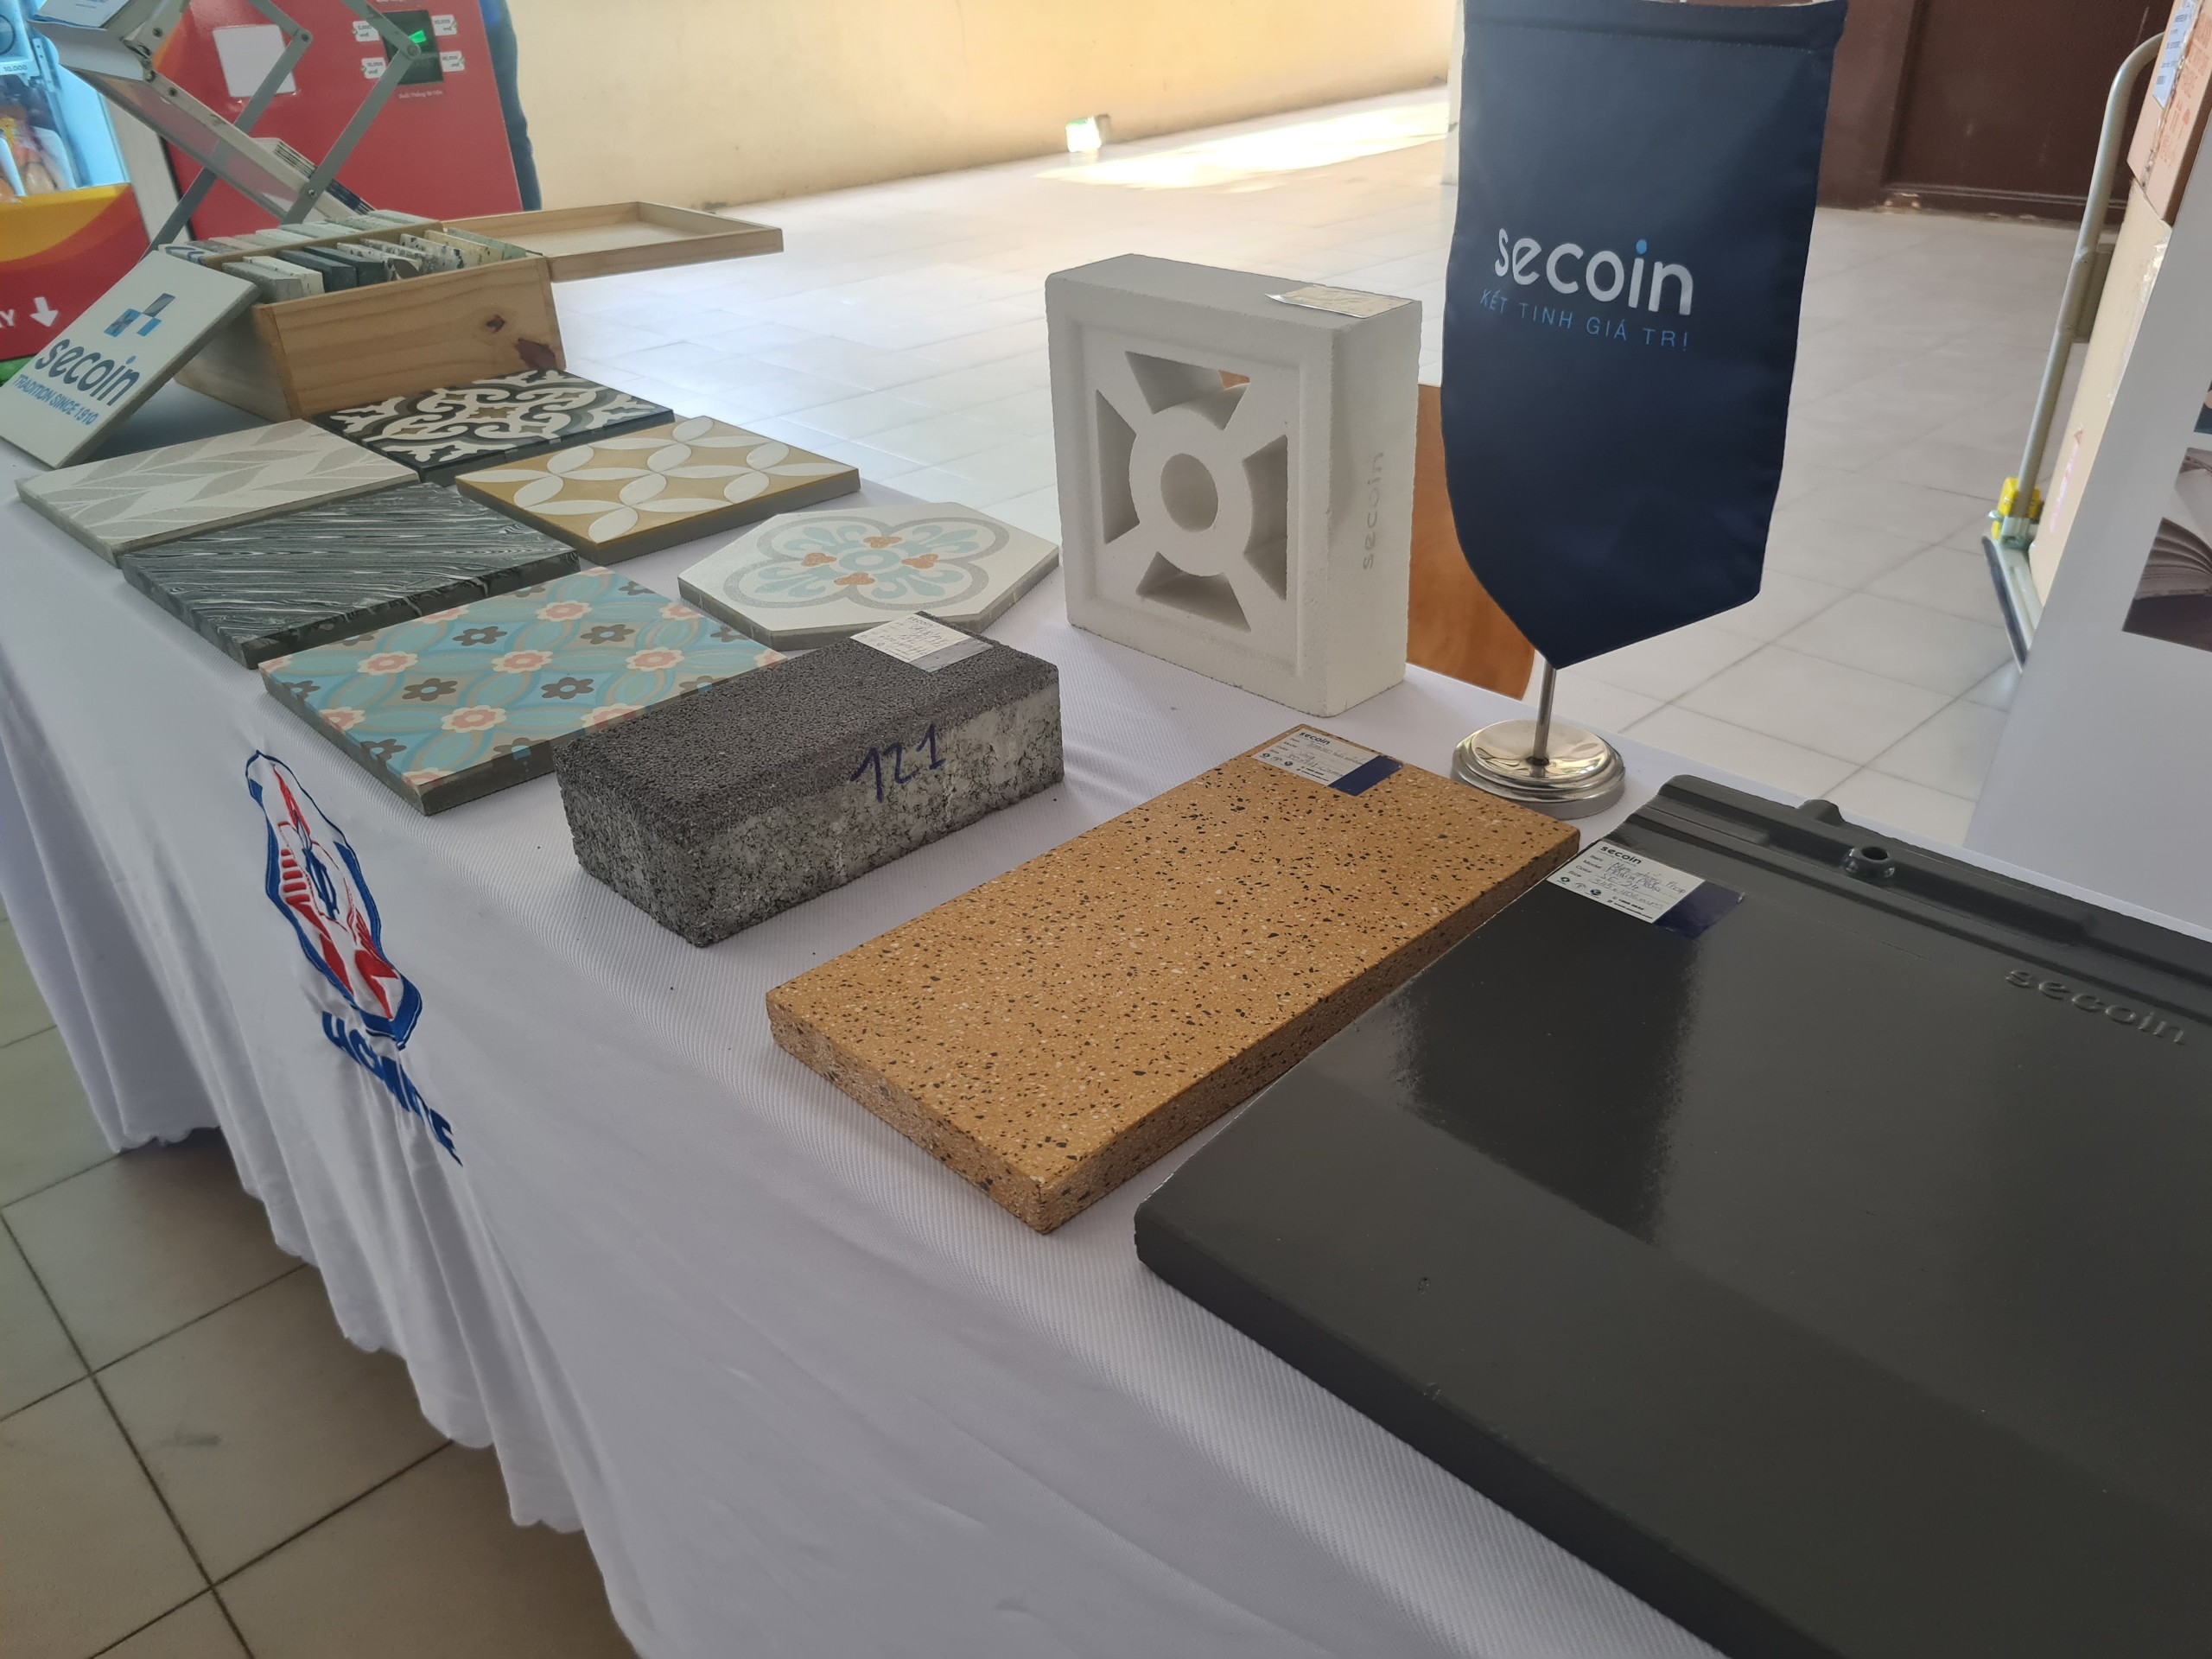 Secoin tham gia Hội nghị Vật lý Chất rắn và Khoa học Vật liệu toàn quốc lần thứ XIII 